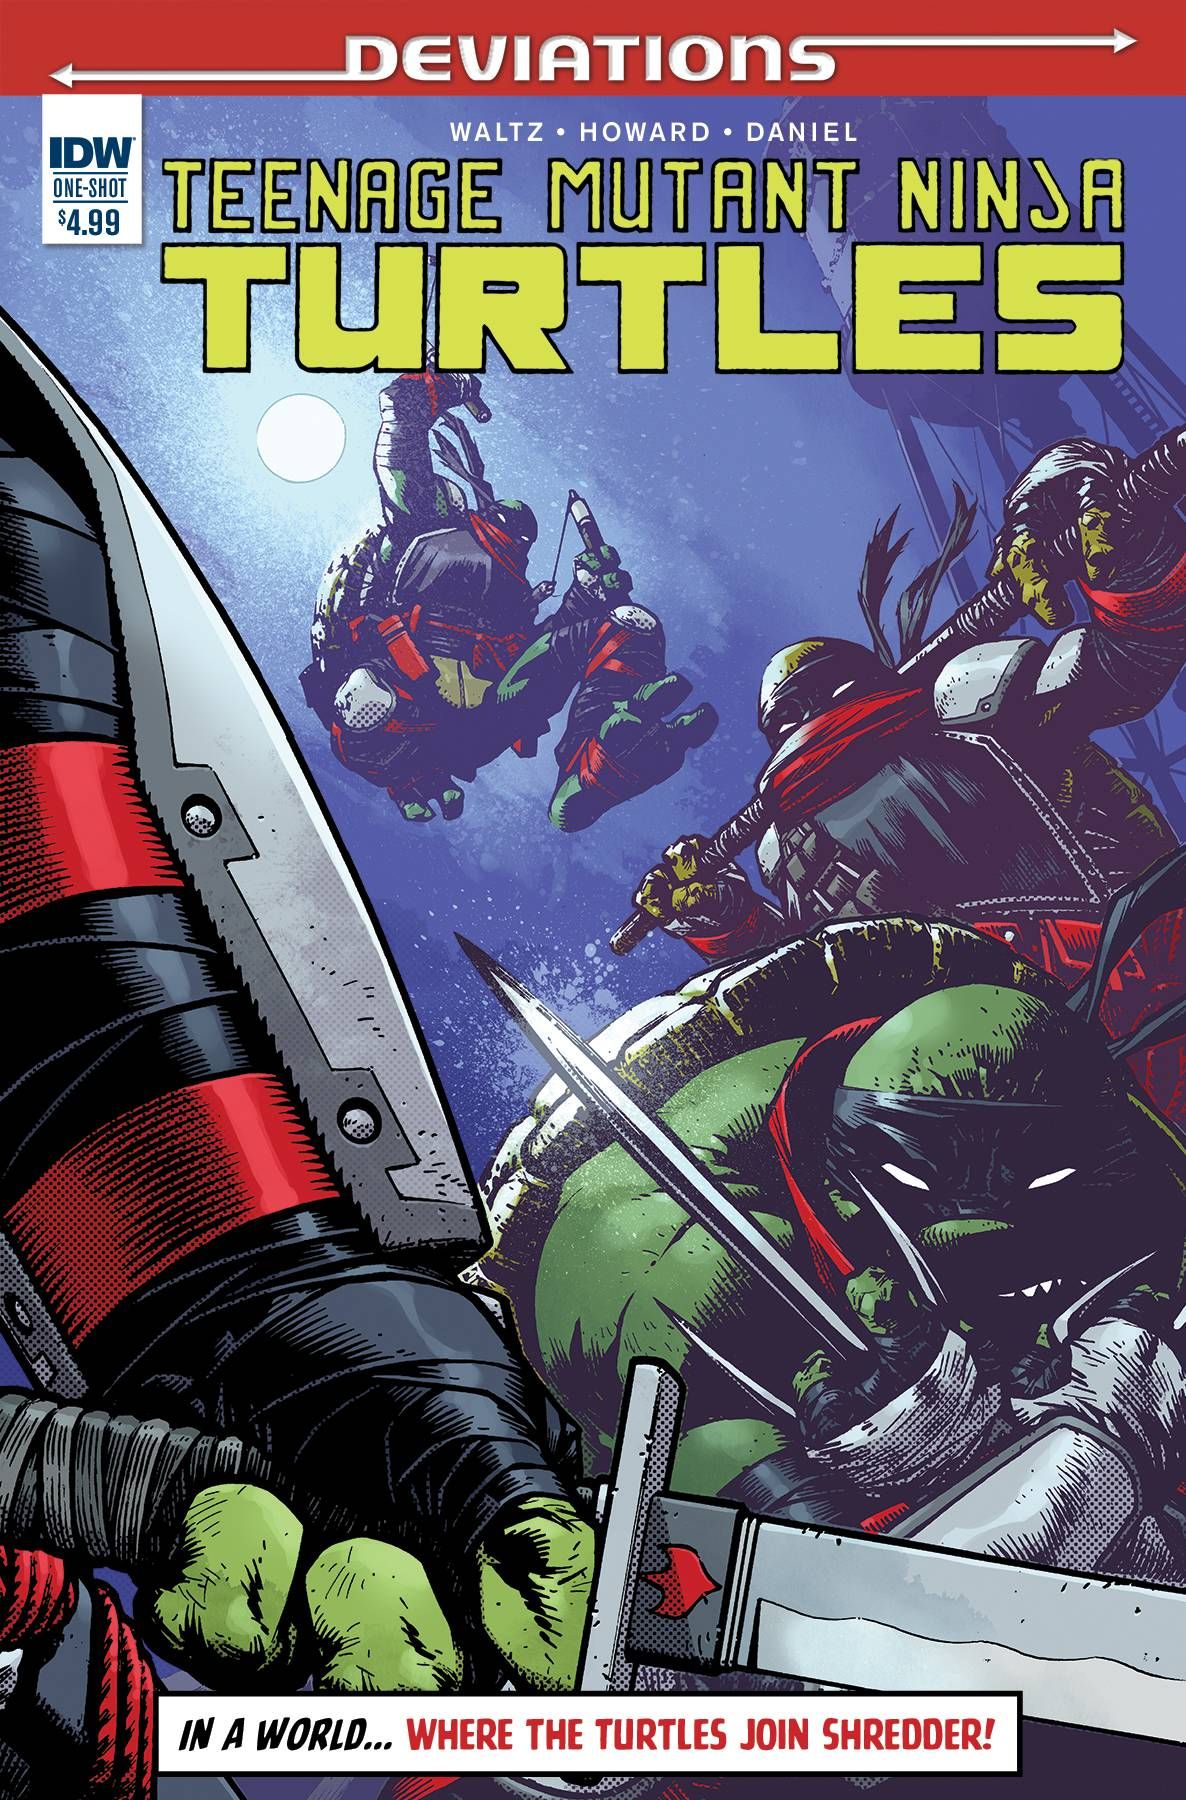 Teenage Mutant Ninja Turtles Deviations #1 Comic